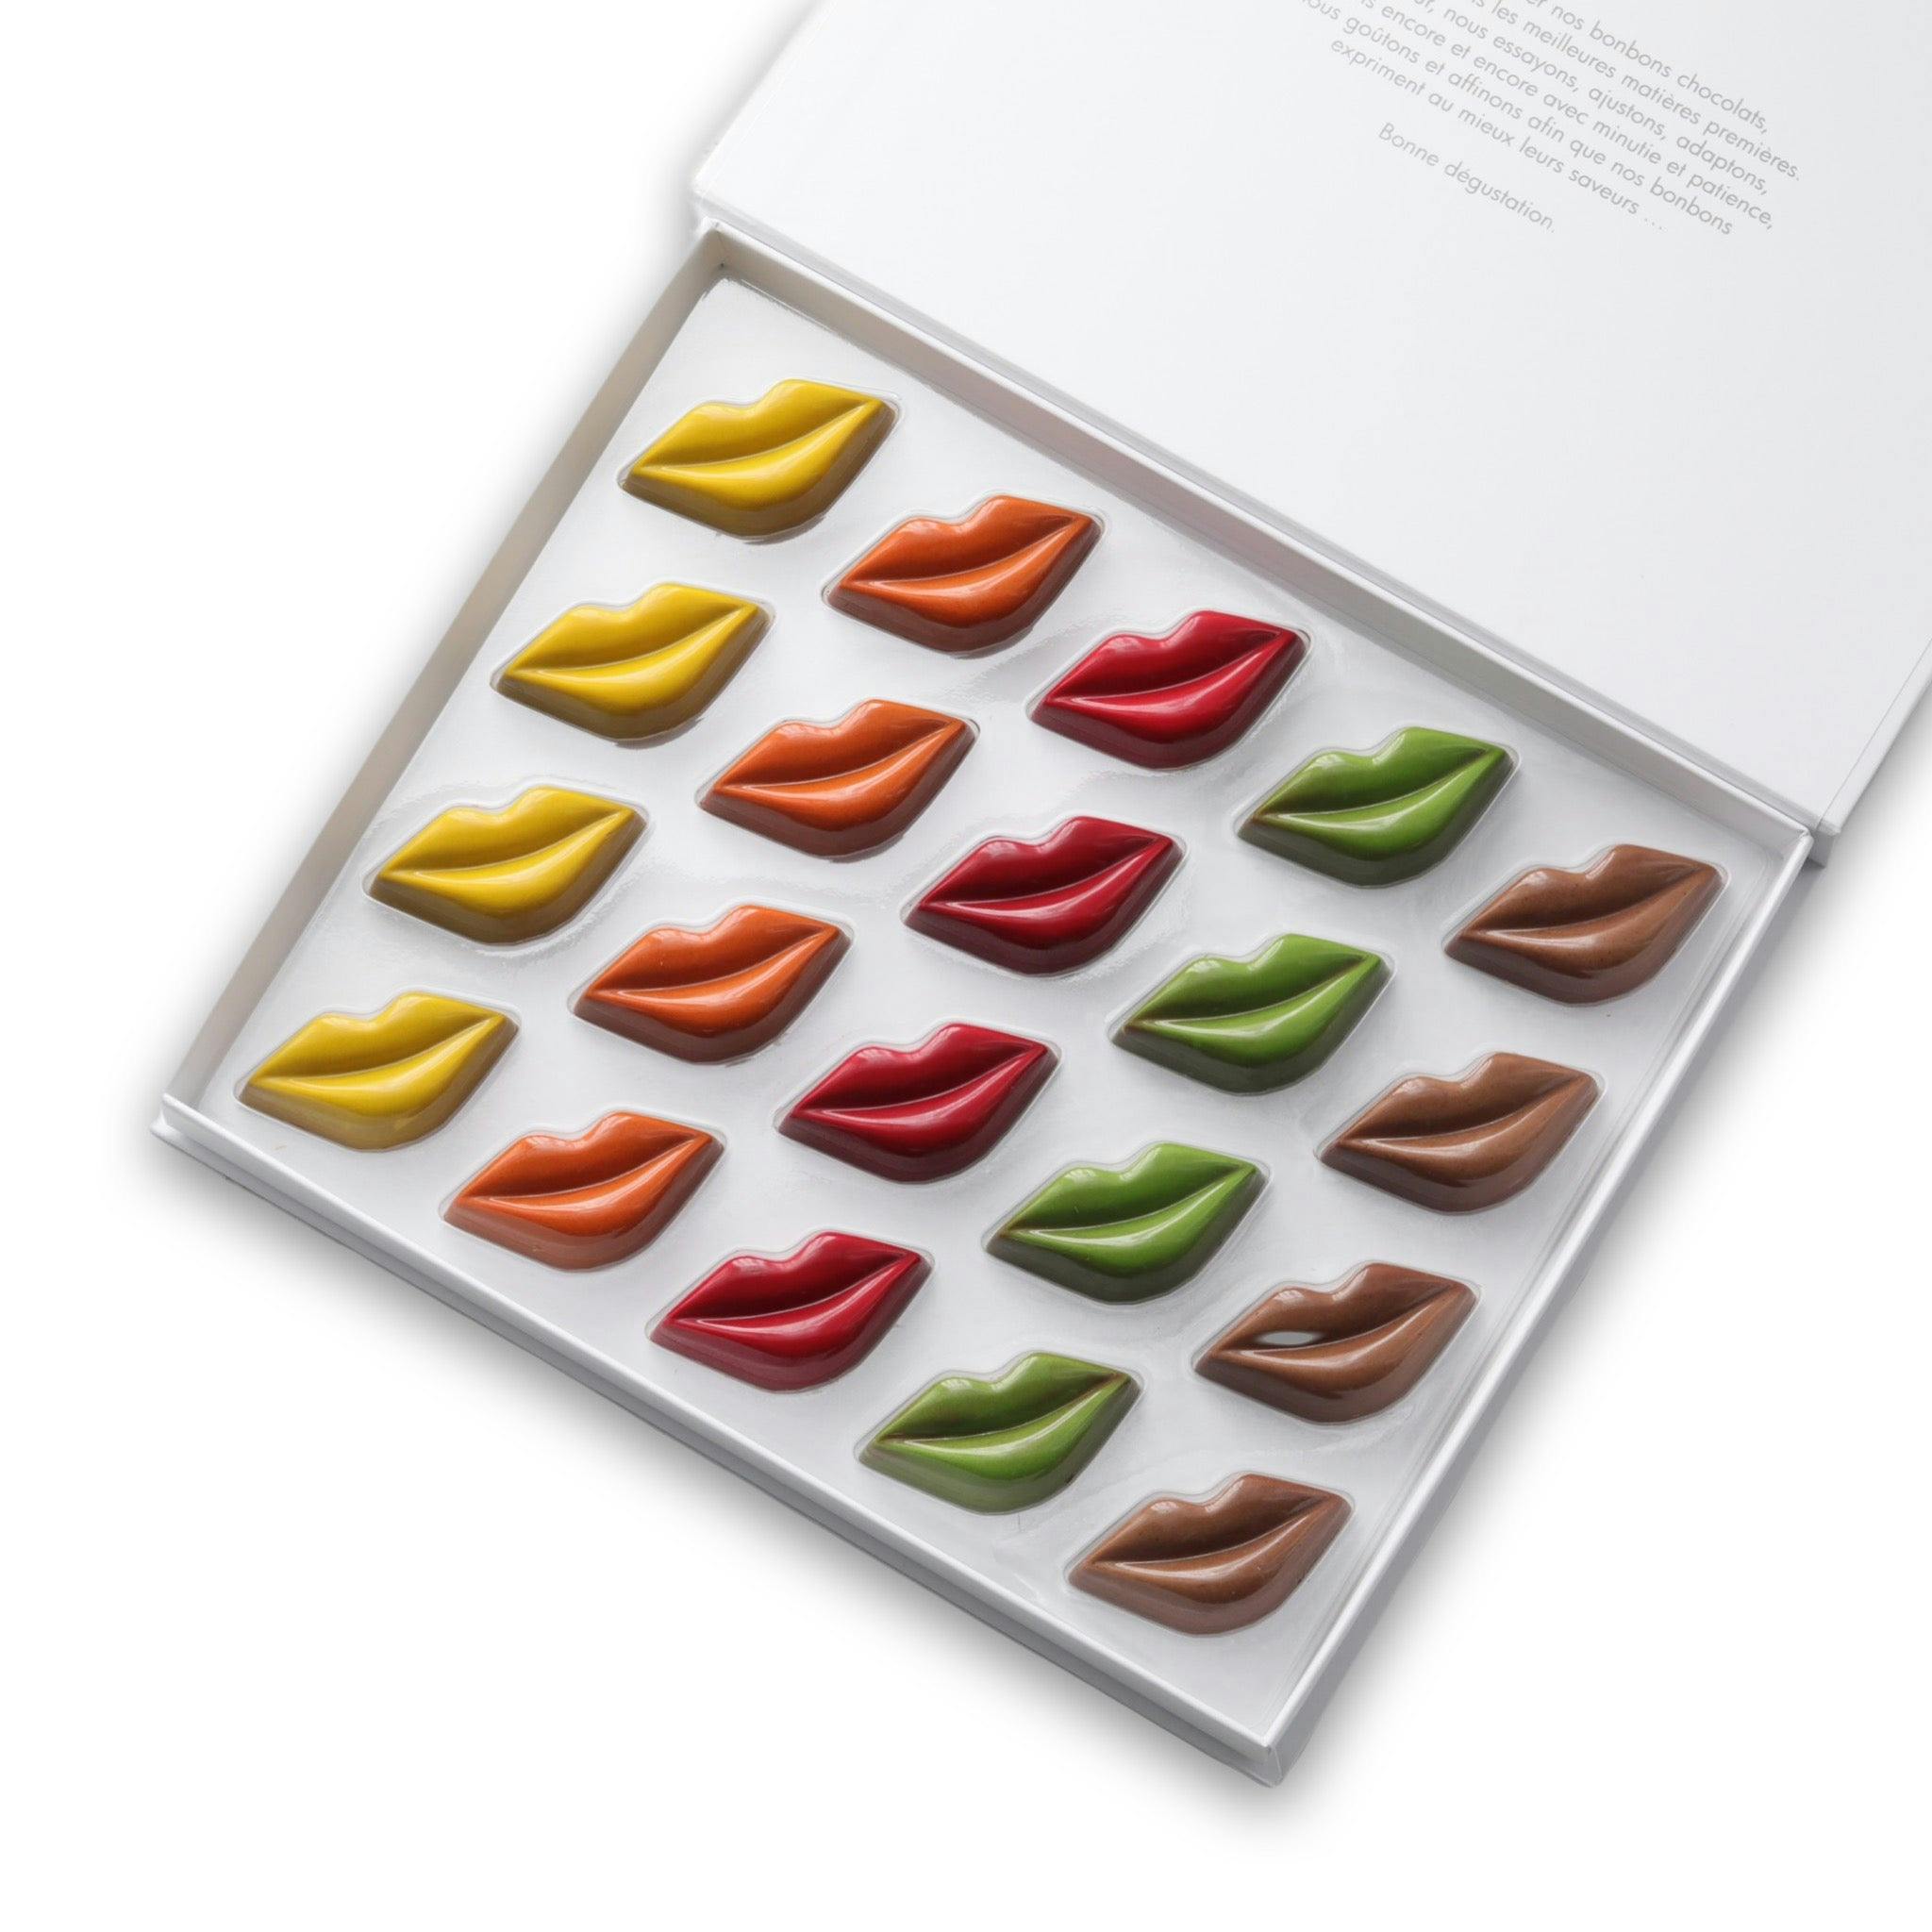 Les Baisers des Sablaises disponible en coffrets de 6/10/20 chocolats - Vincent Vallée chocolatier champion du monde